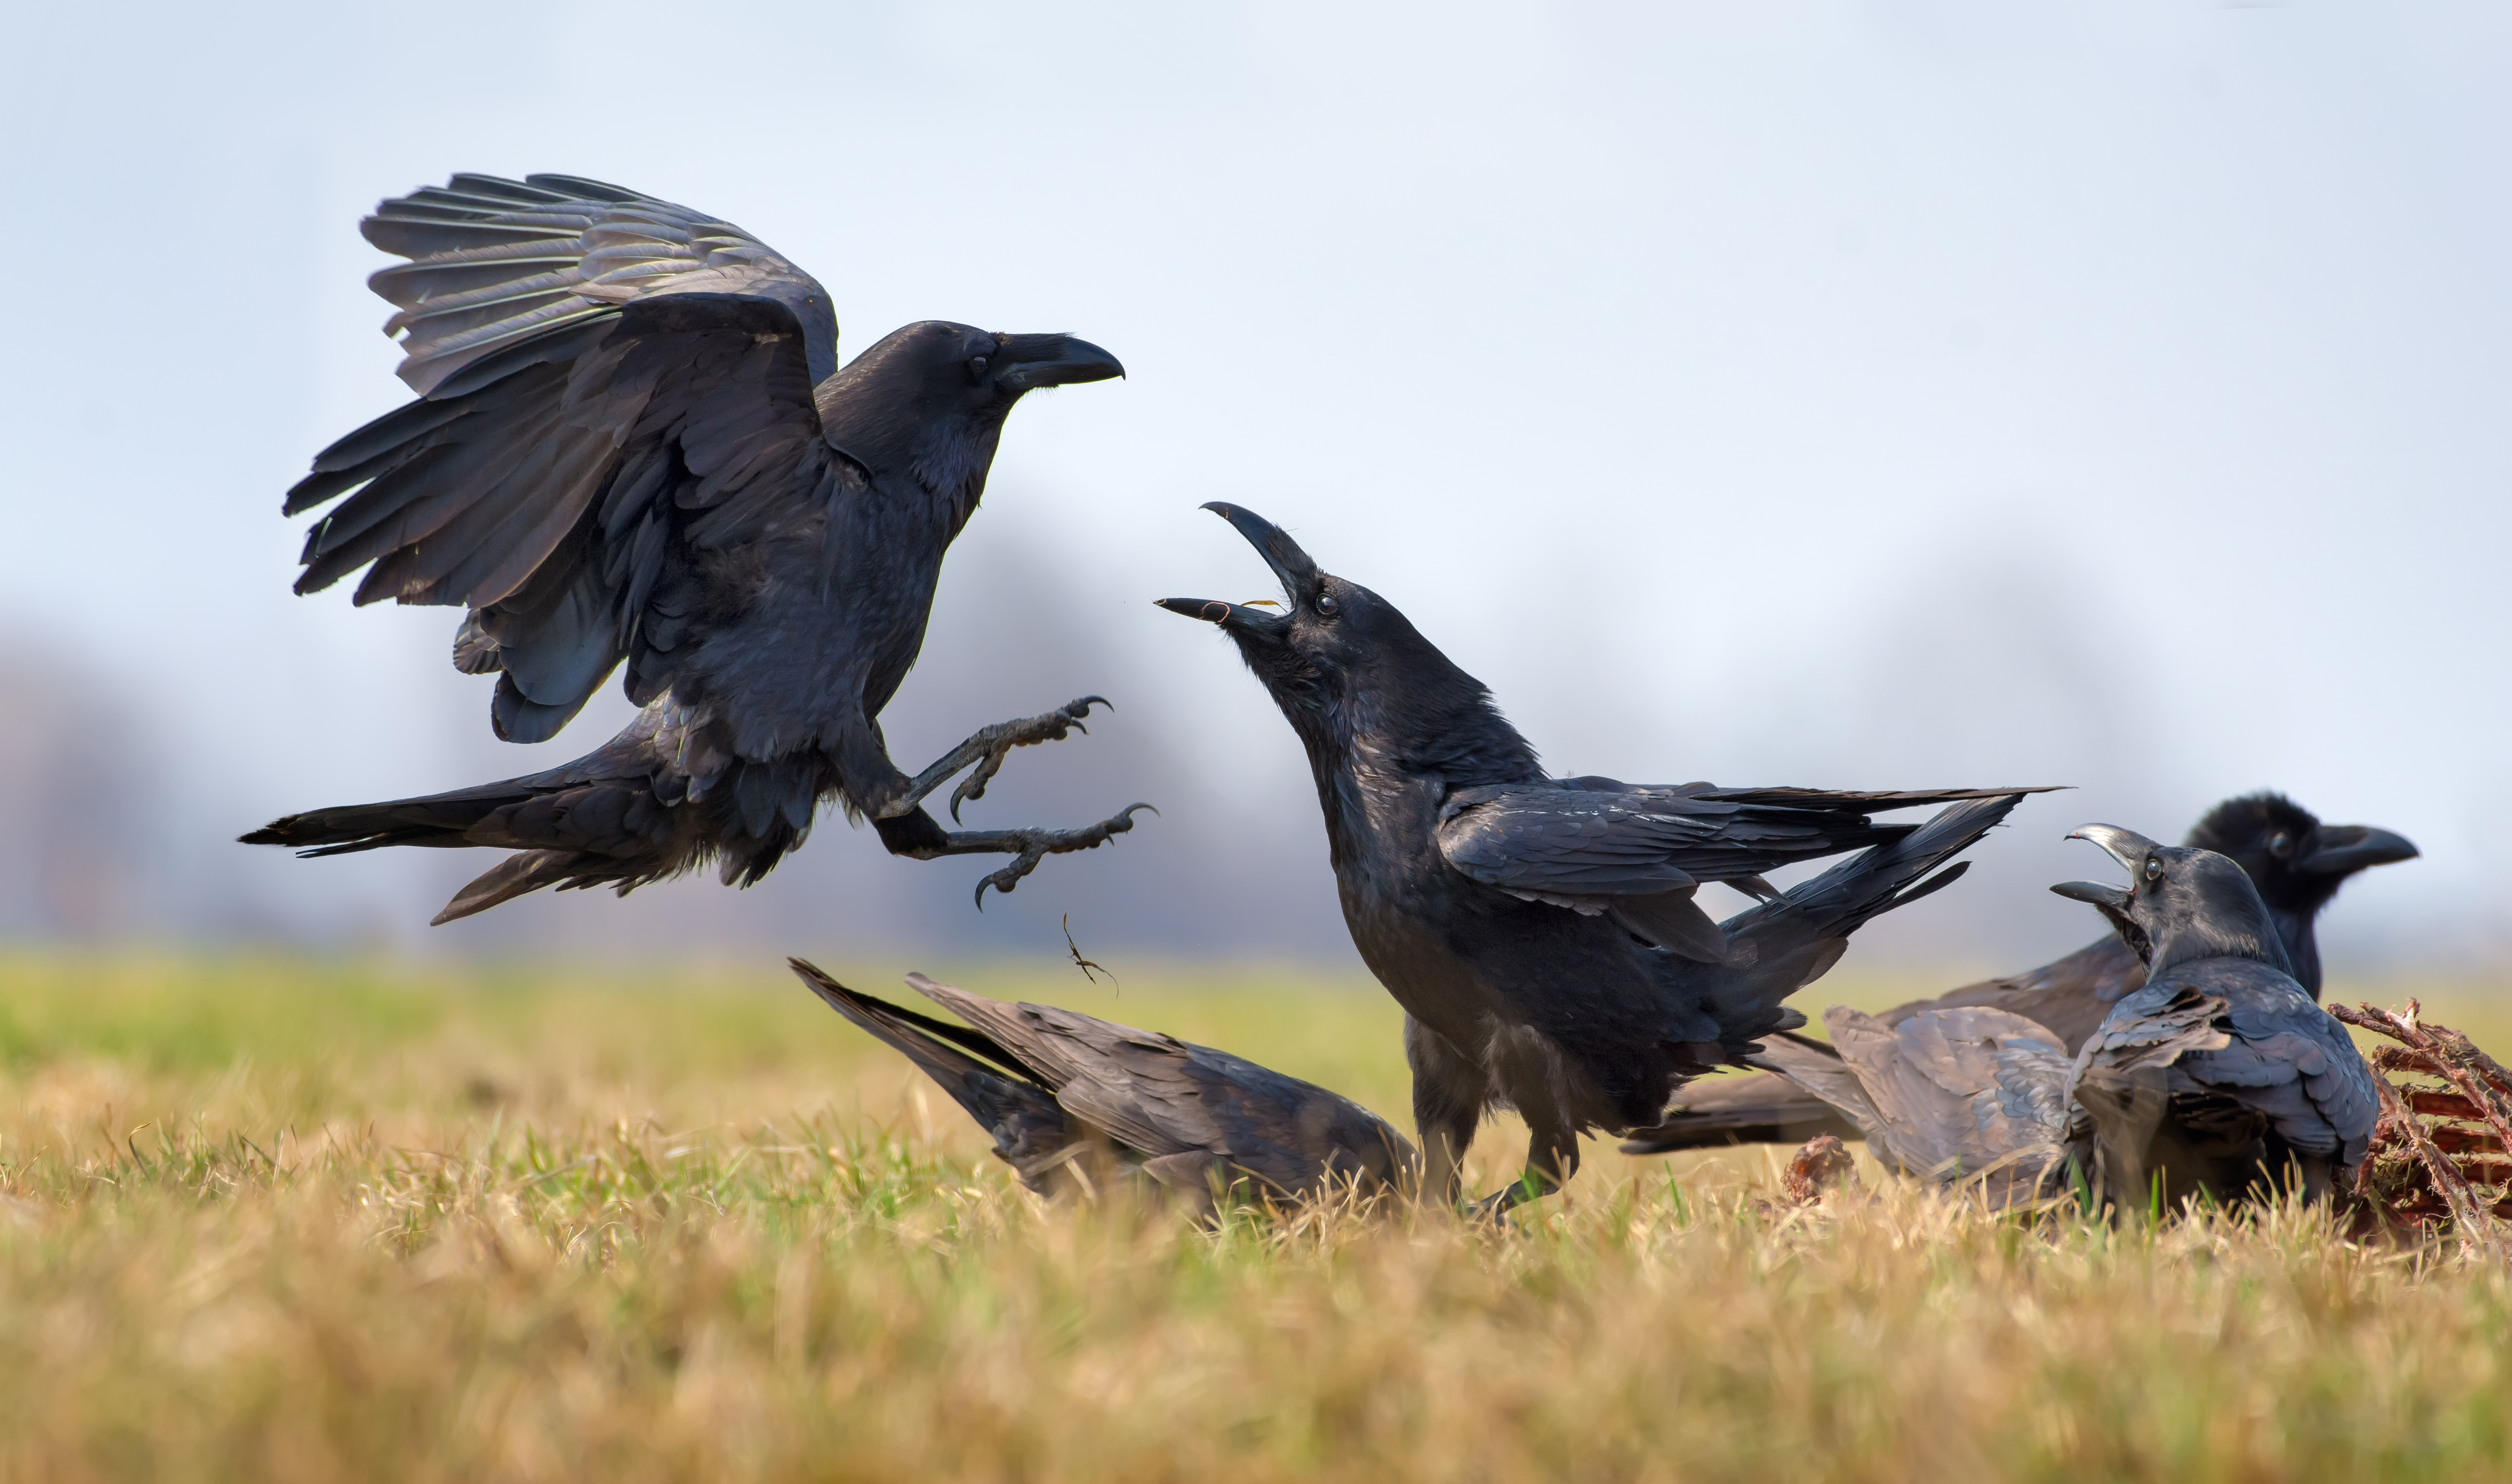 Raven op een kadaver. Foto: Nick Vorobey